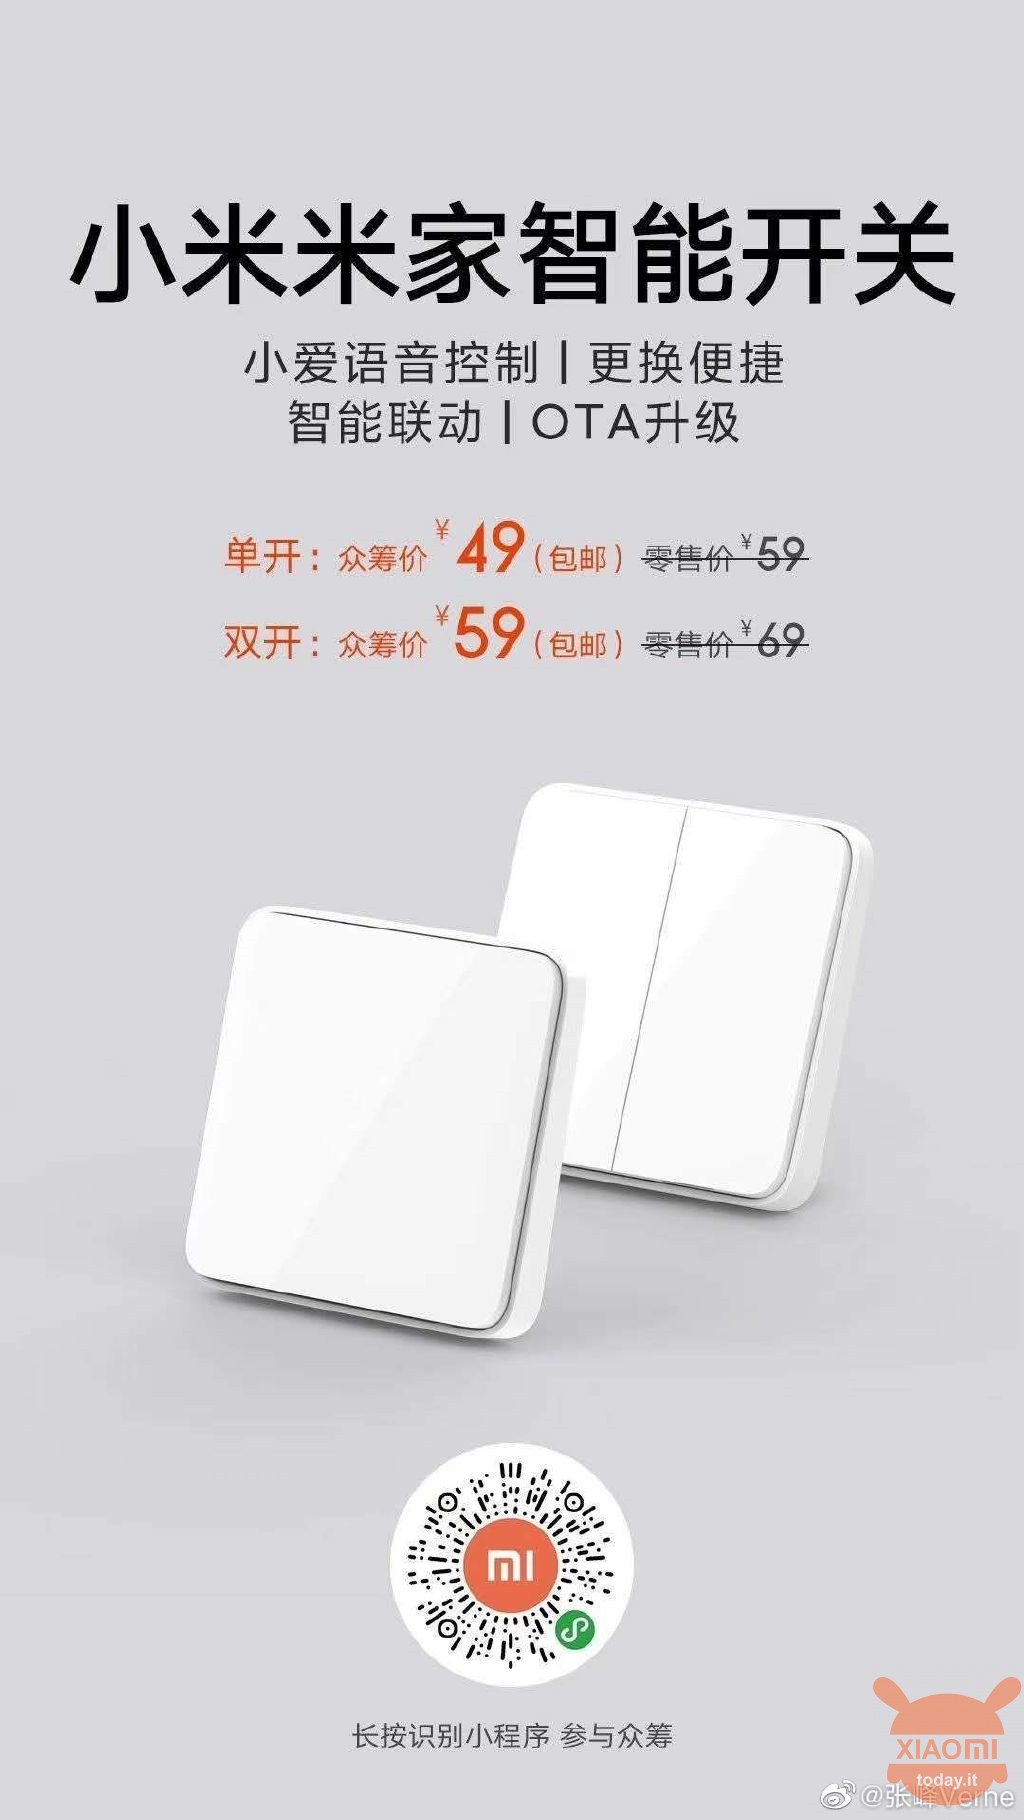 Xiaomi Mijia Smart Switch e Aqara Gateway M1s